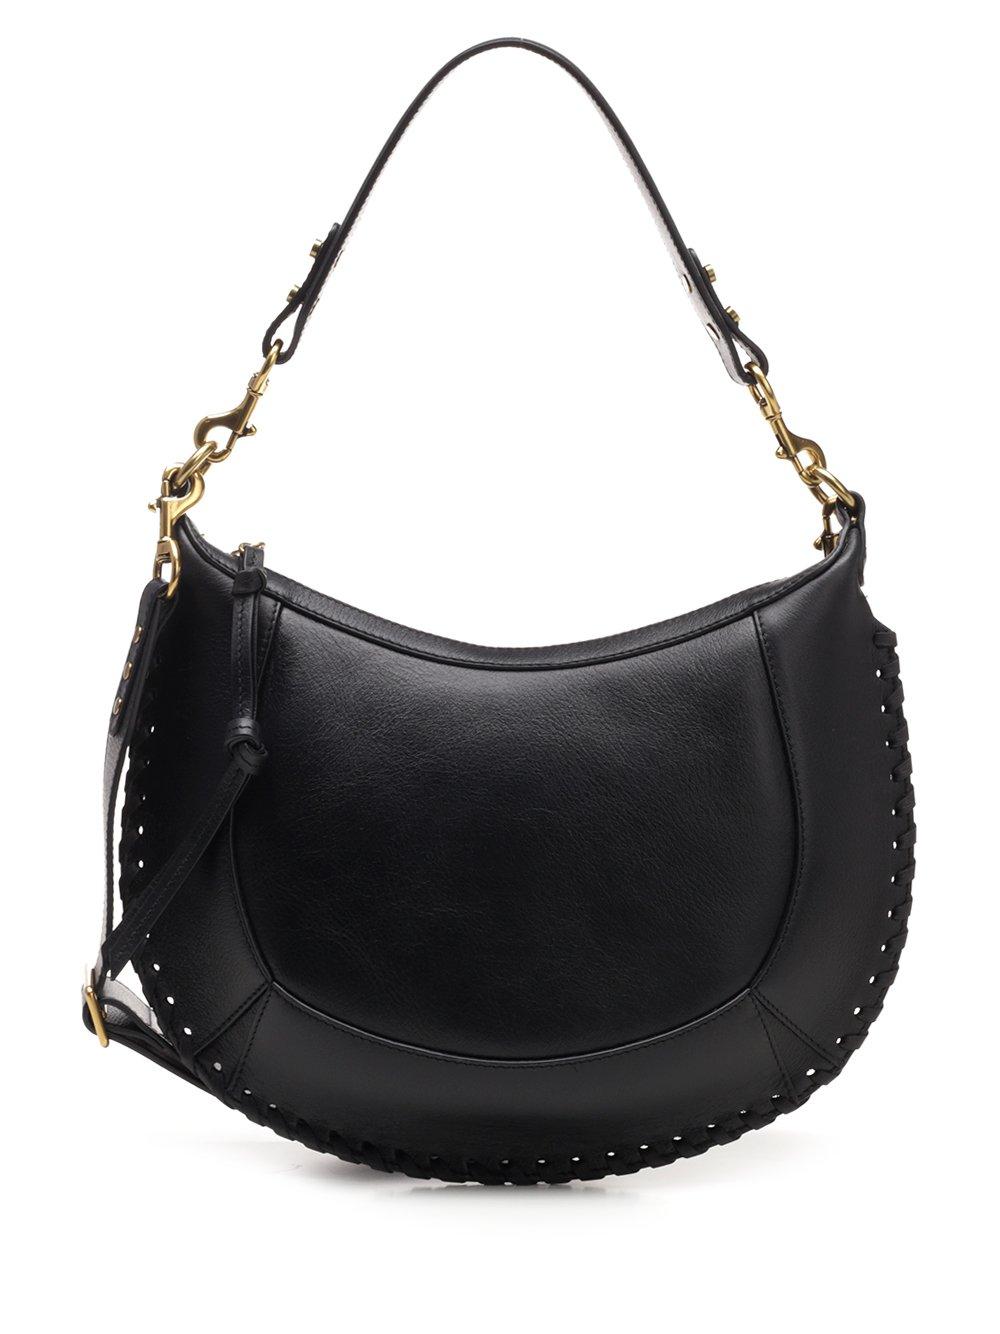 Isabel Marant Leather 'naoko' Shoulder Bag in Black - Save 39% - Lyst